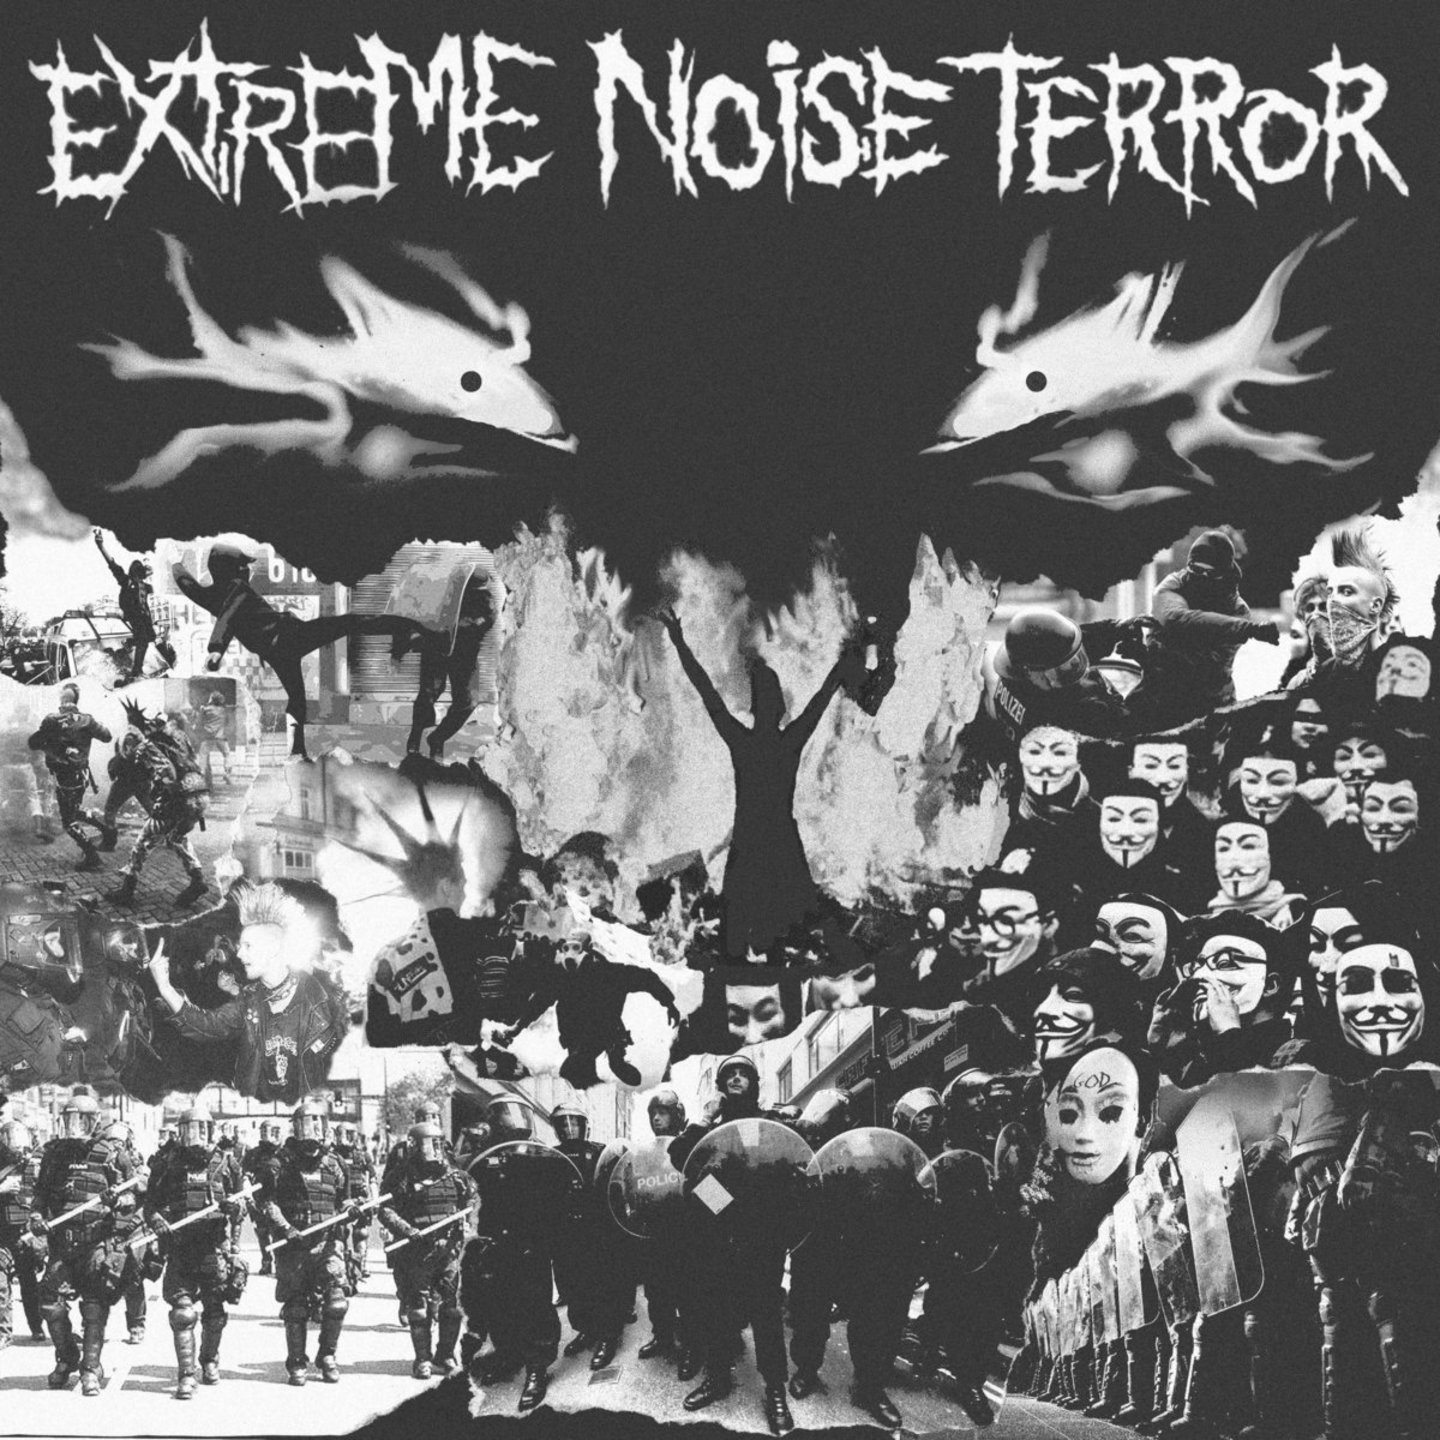 EXTREME NOISE TERROR - Extreme Noise Terror LP